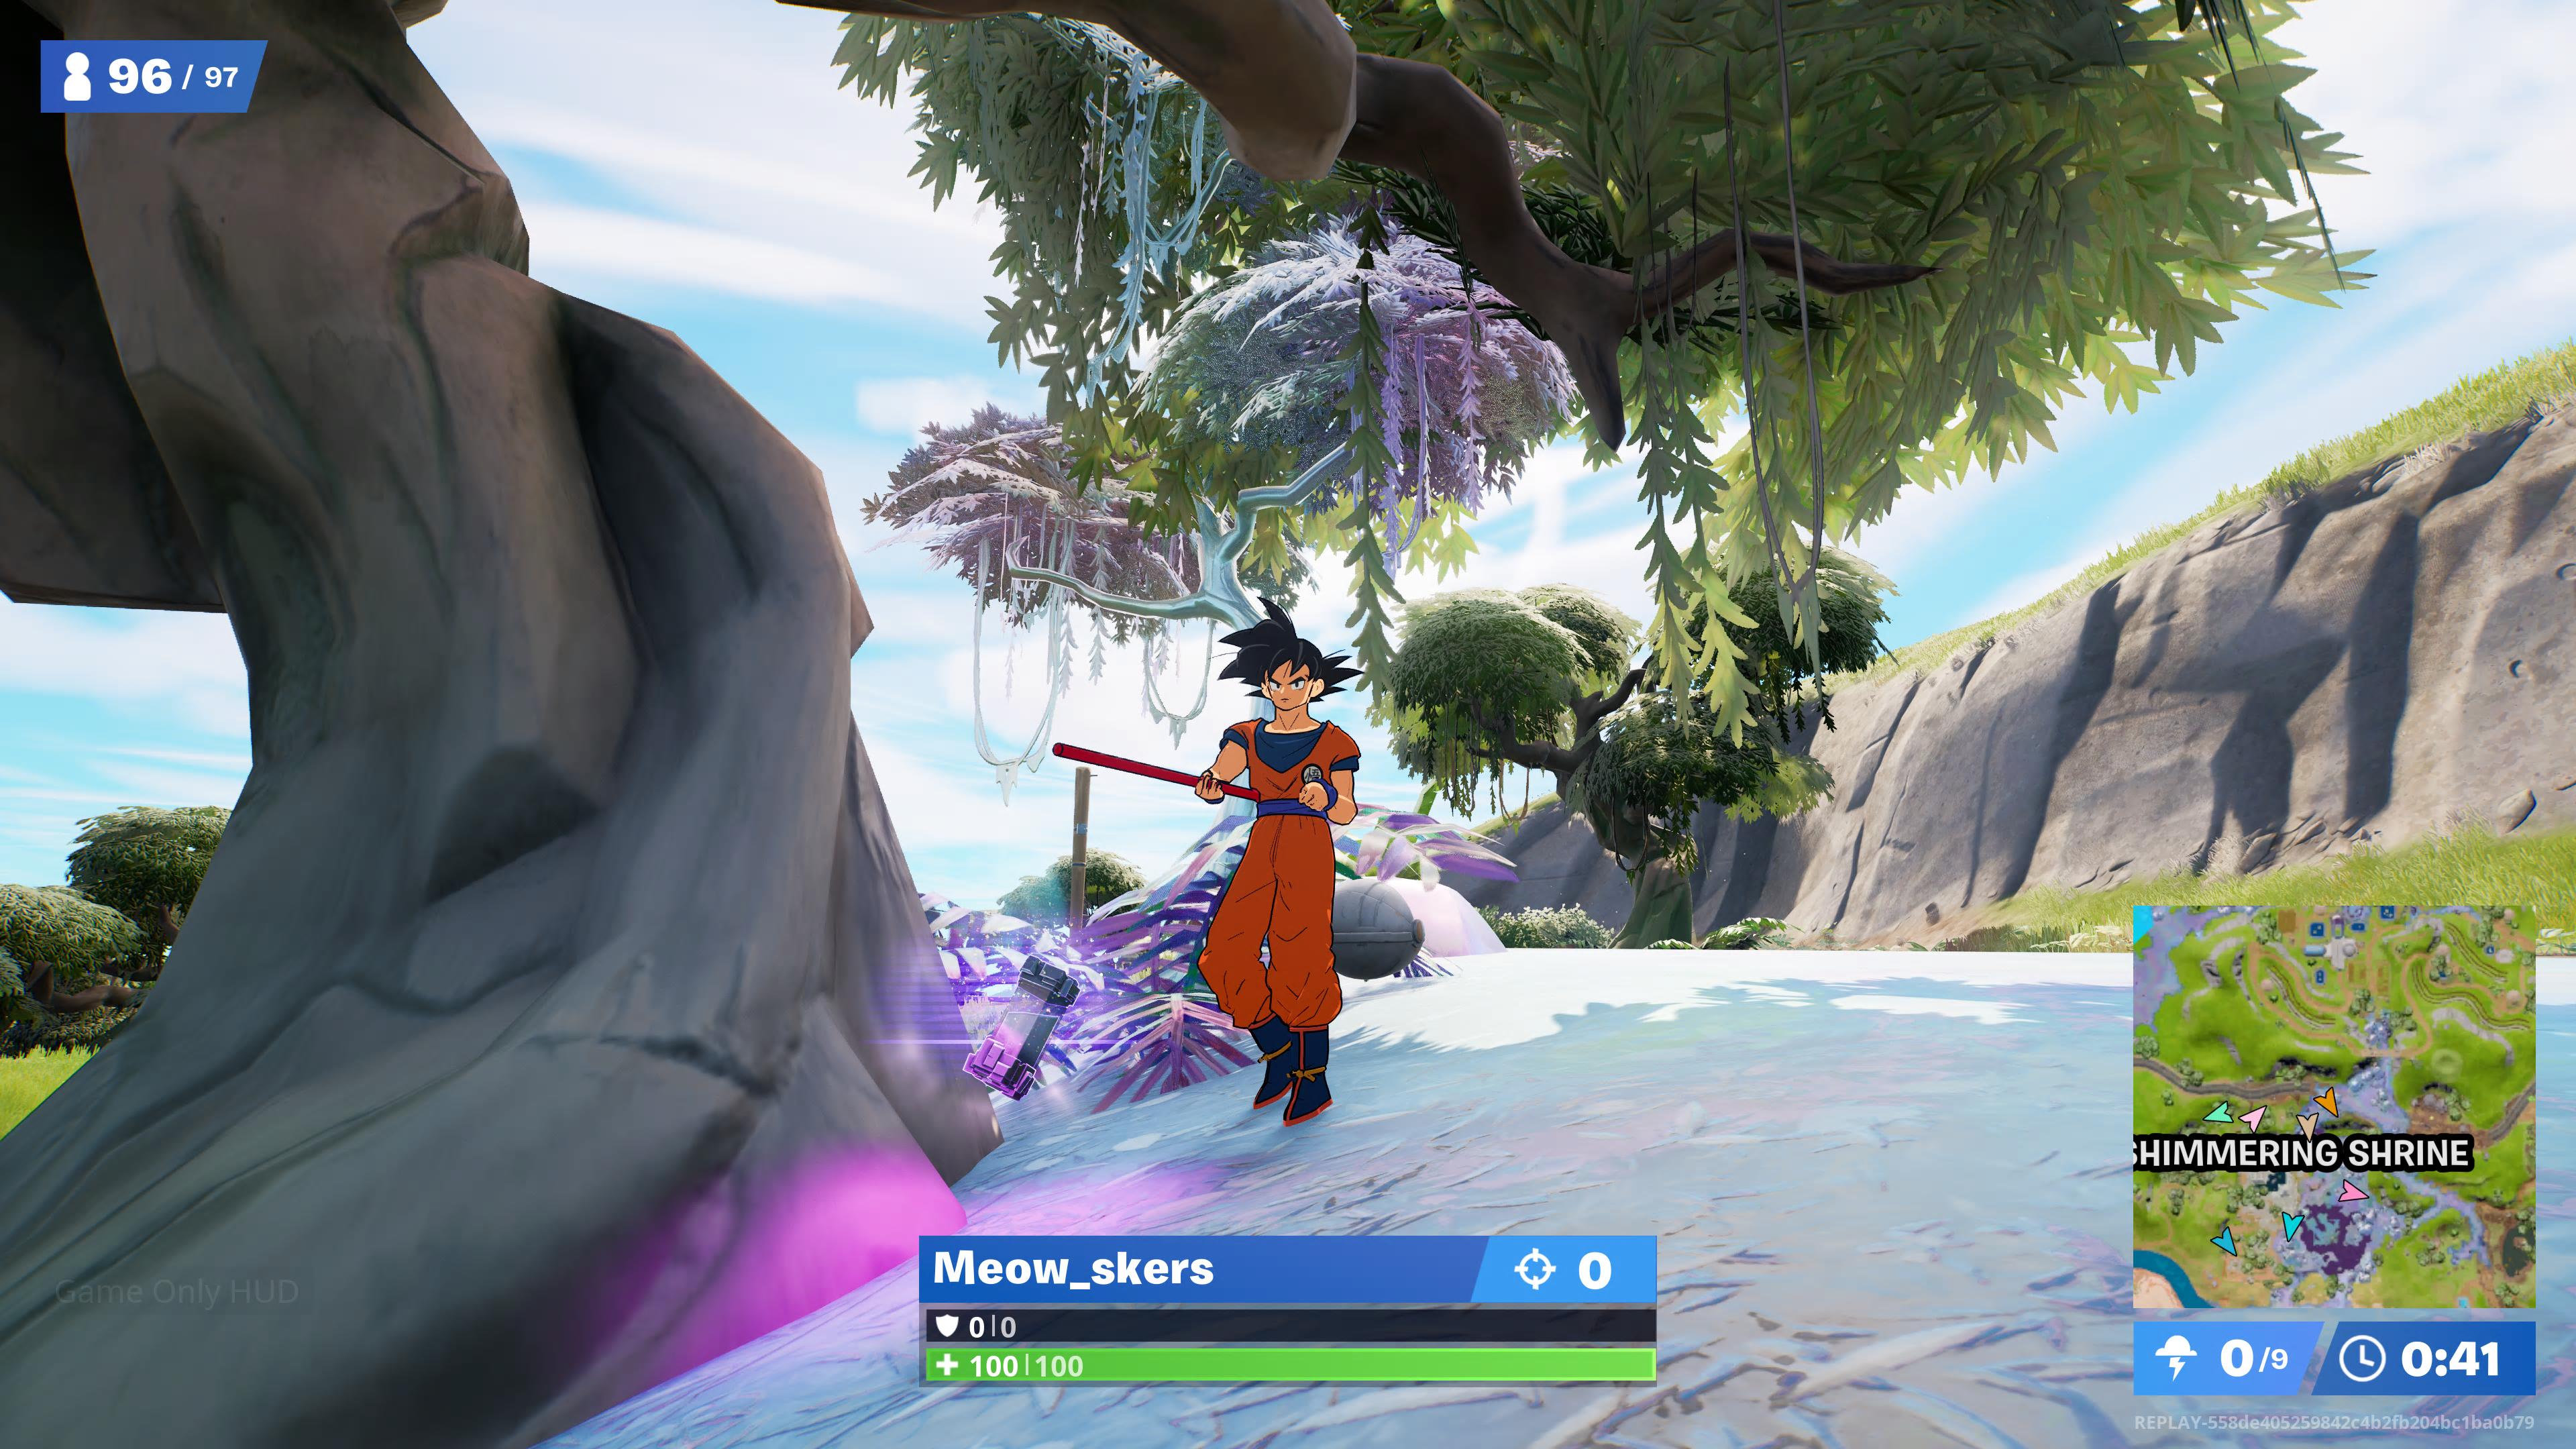 Goku next to Chrome tree in Fortnite.